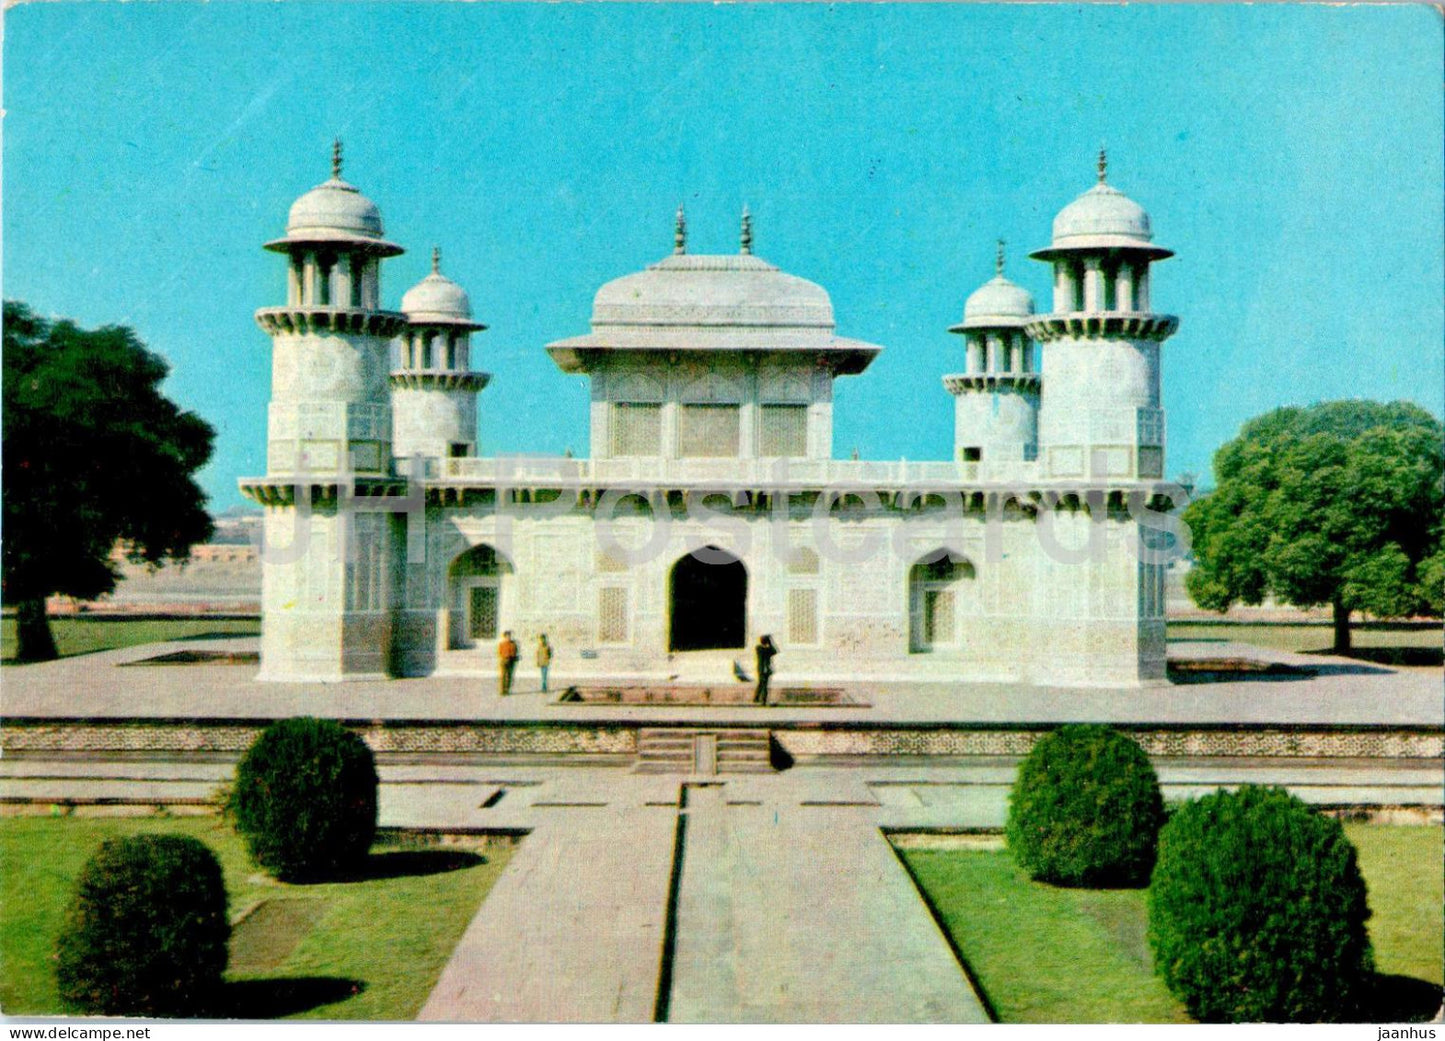 Agra - The Itmad ud daula's Tomb - India - unused - JH Postcards